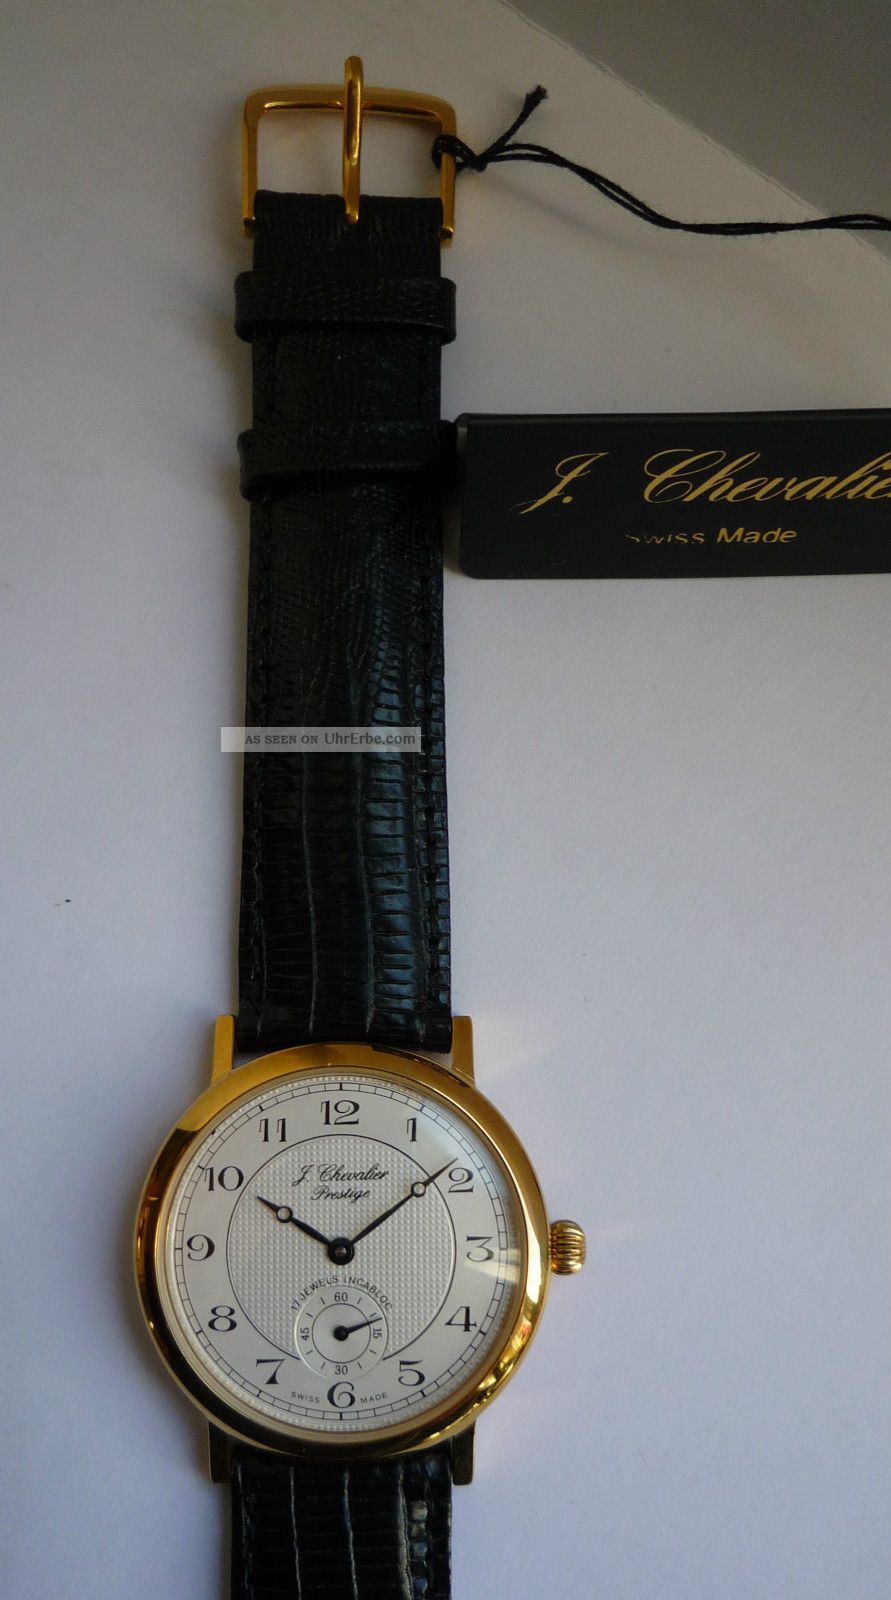 Chevalier Armbanduhr Aus Geschäftsauflösung Wie Mit Etikett Armbanduhren Bild